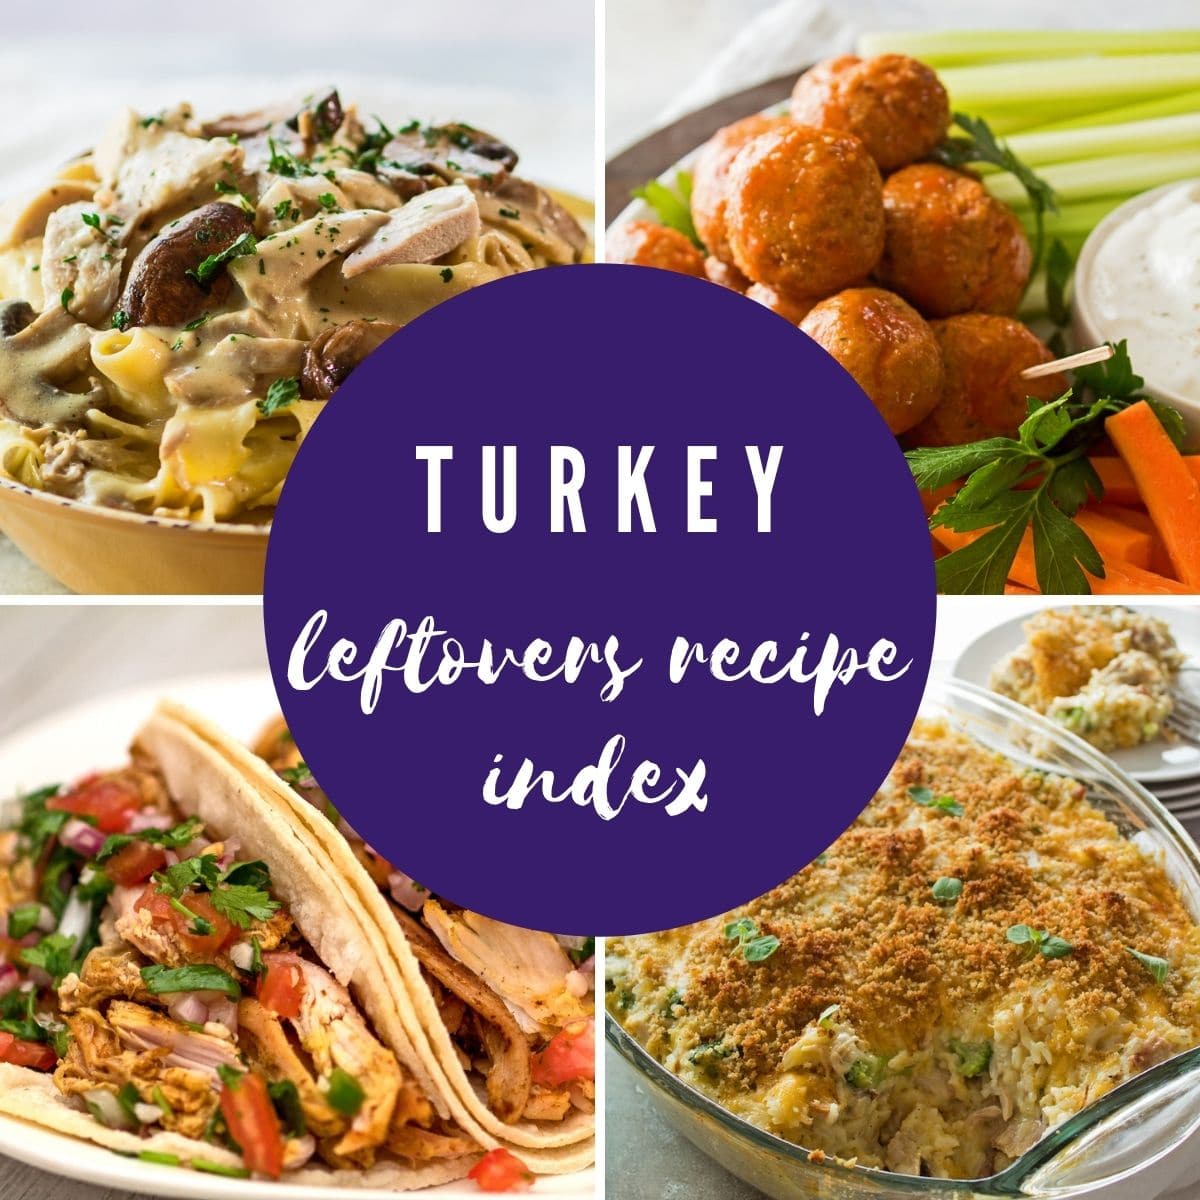 Zbylé turecké recepty koláž fotografií s překrytím textu.